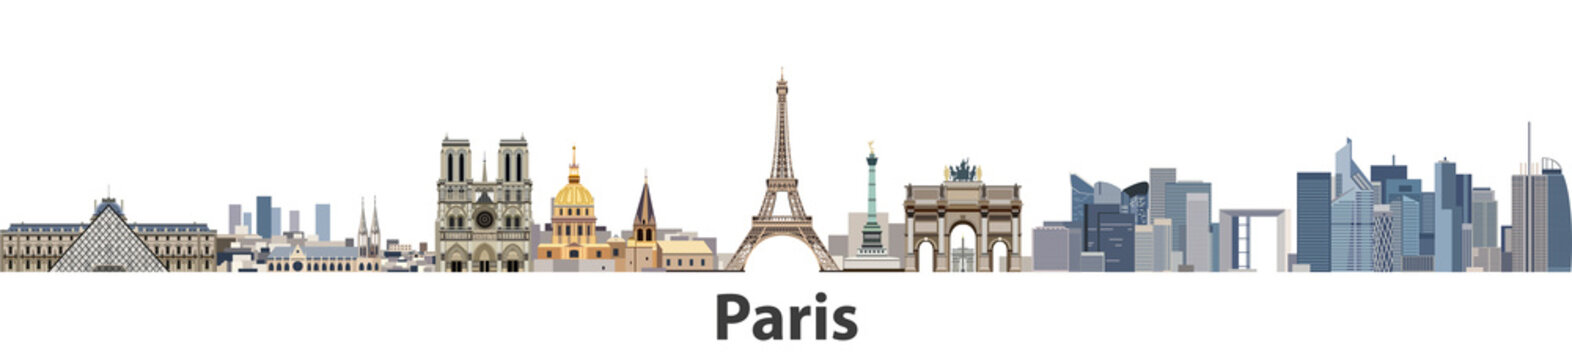 Fototapeta Panoramę miasta wektor Paryż